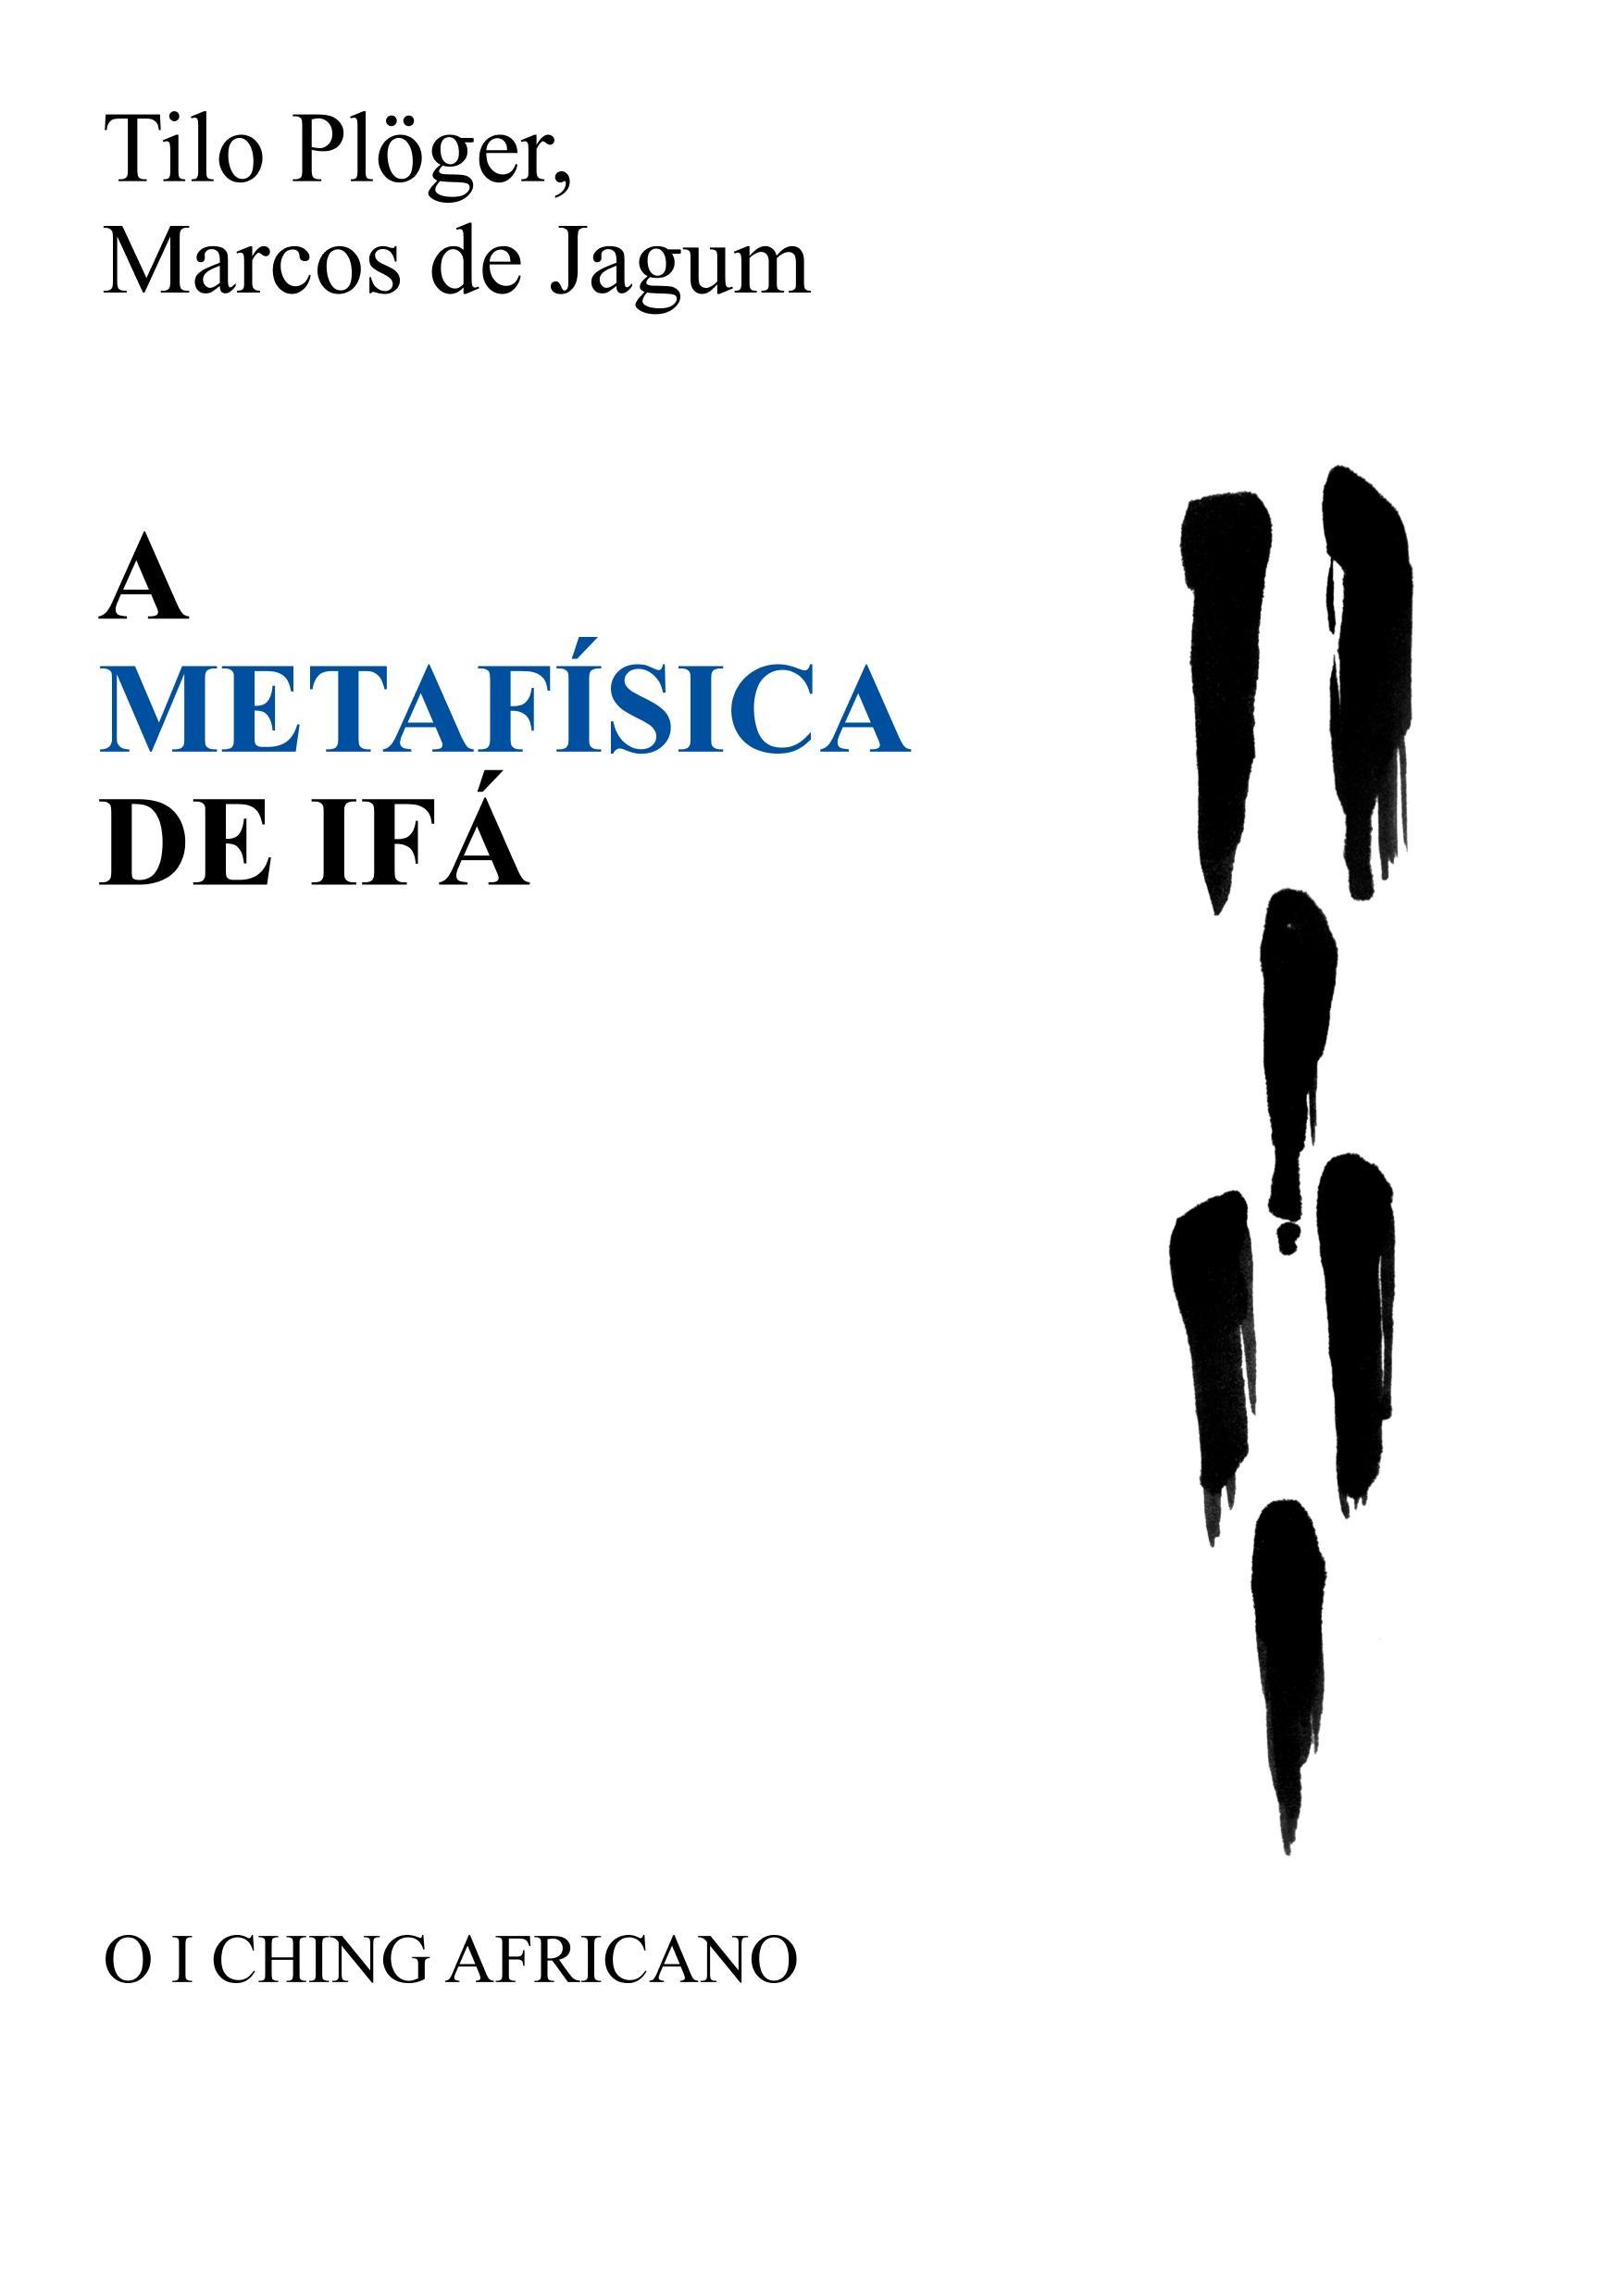 A METAFÍSICA DE IFÁ - Plöger, Tilo|de Jagum, Marcos